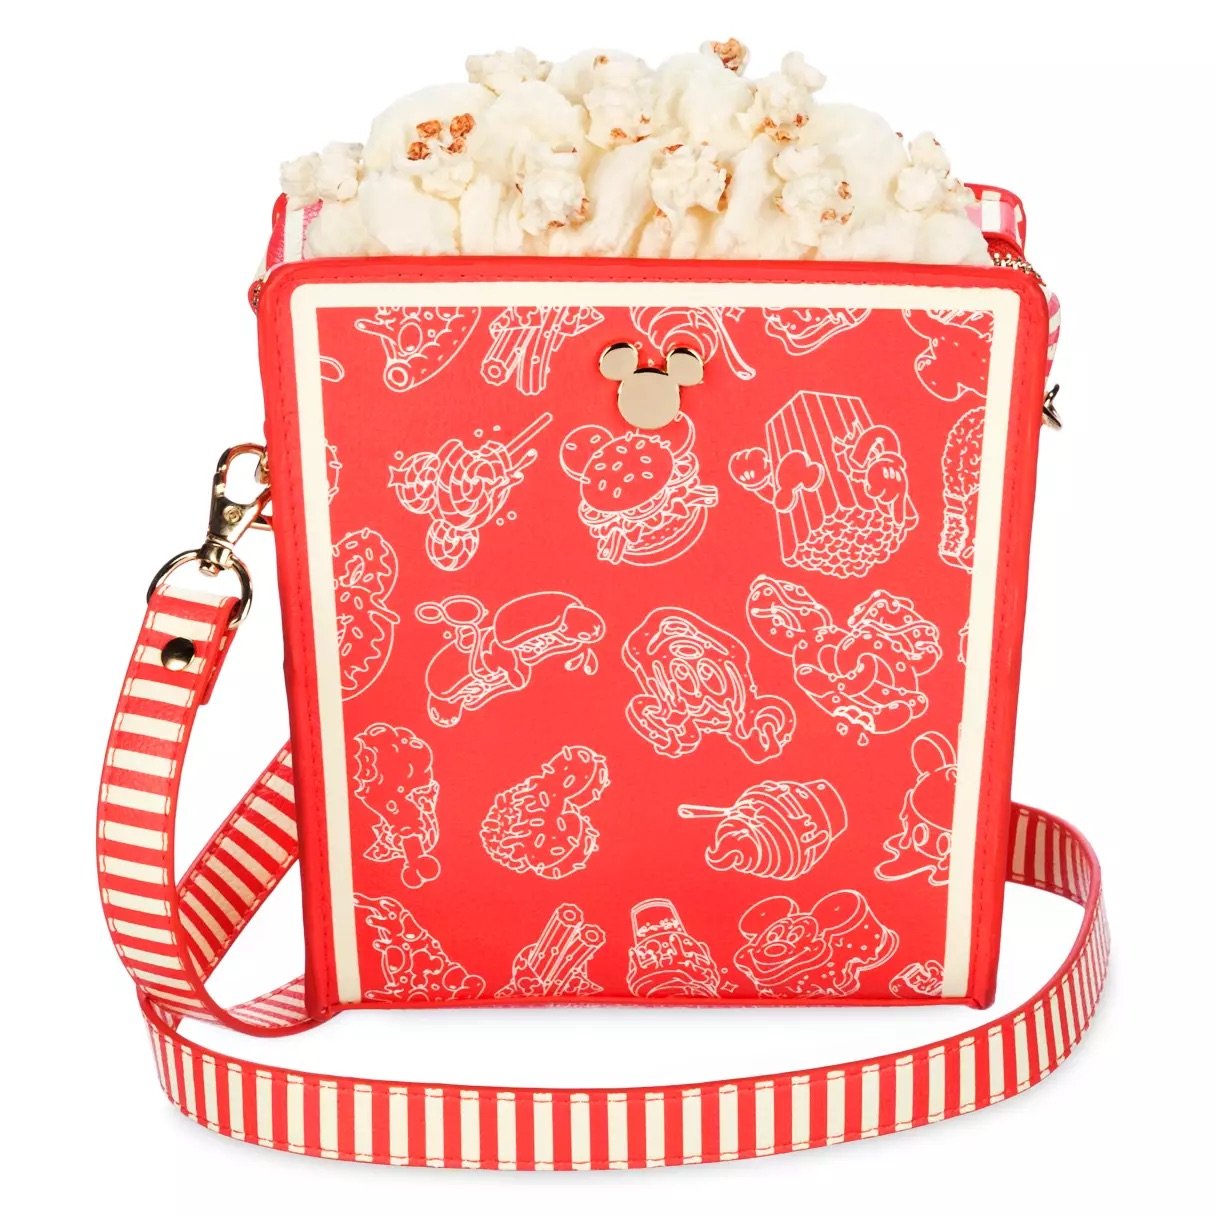 Popcorn Box Crossbody Bag